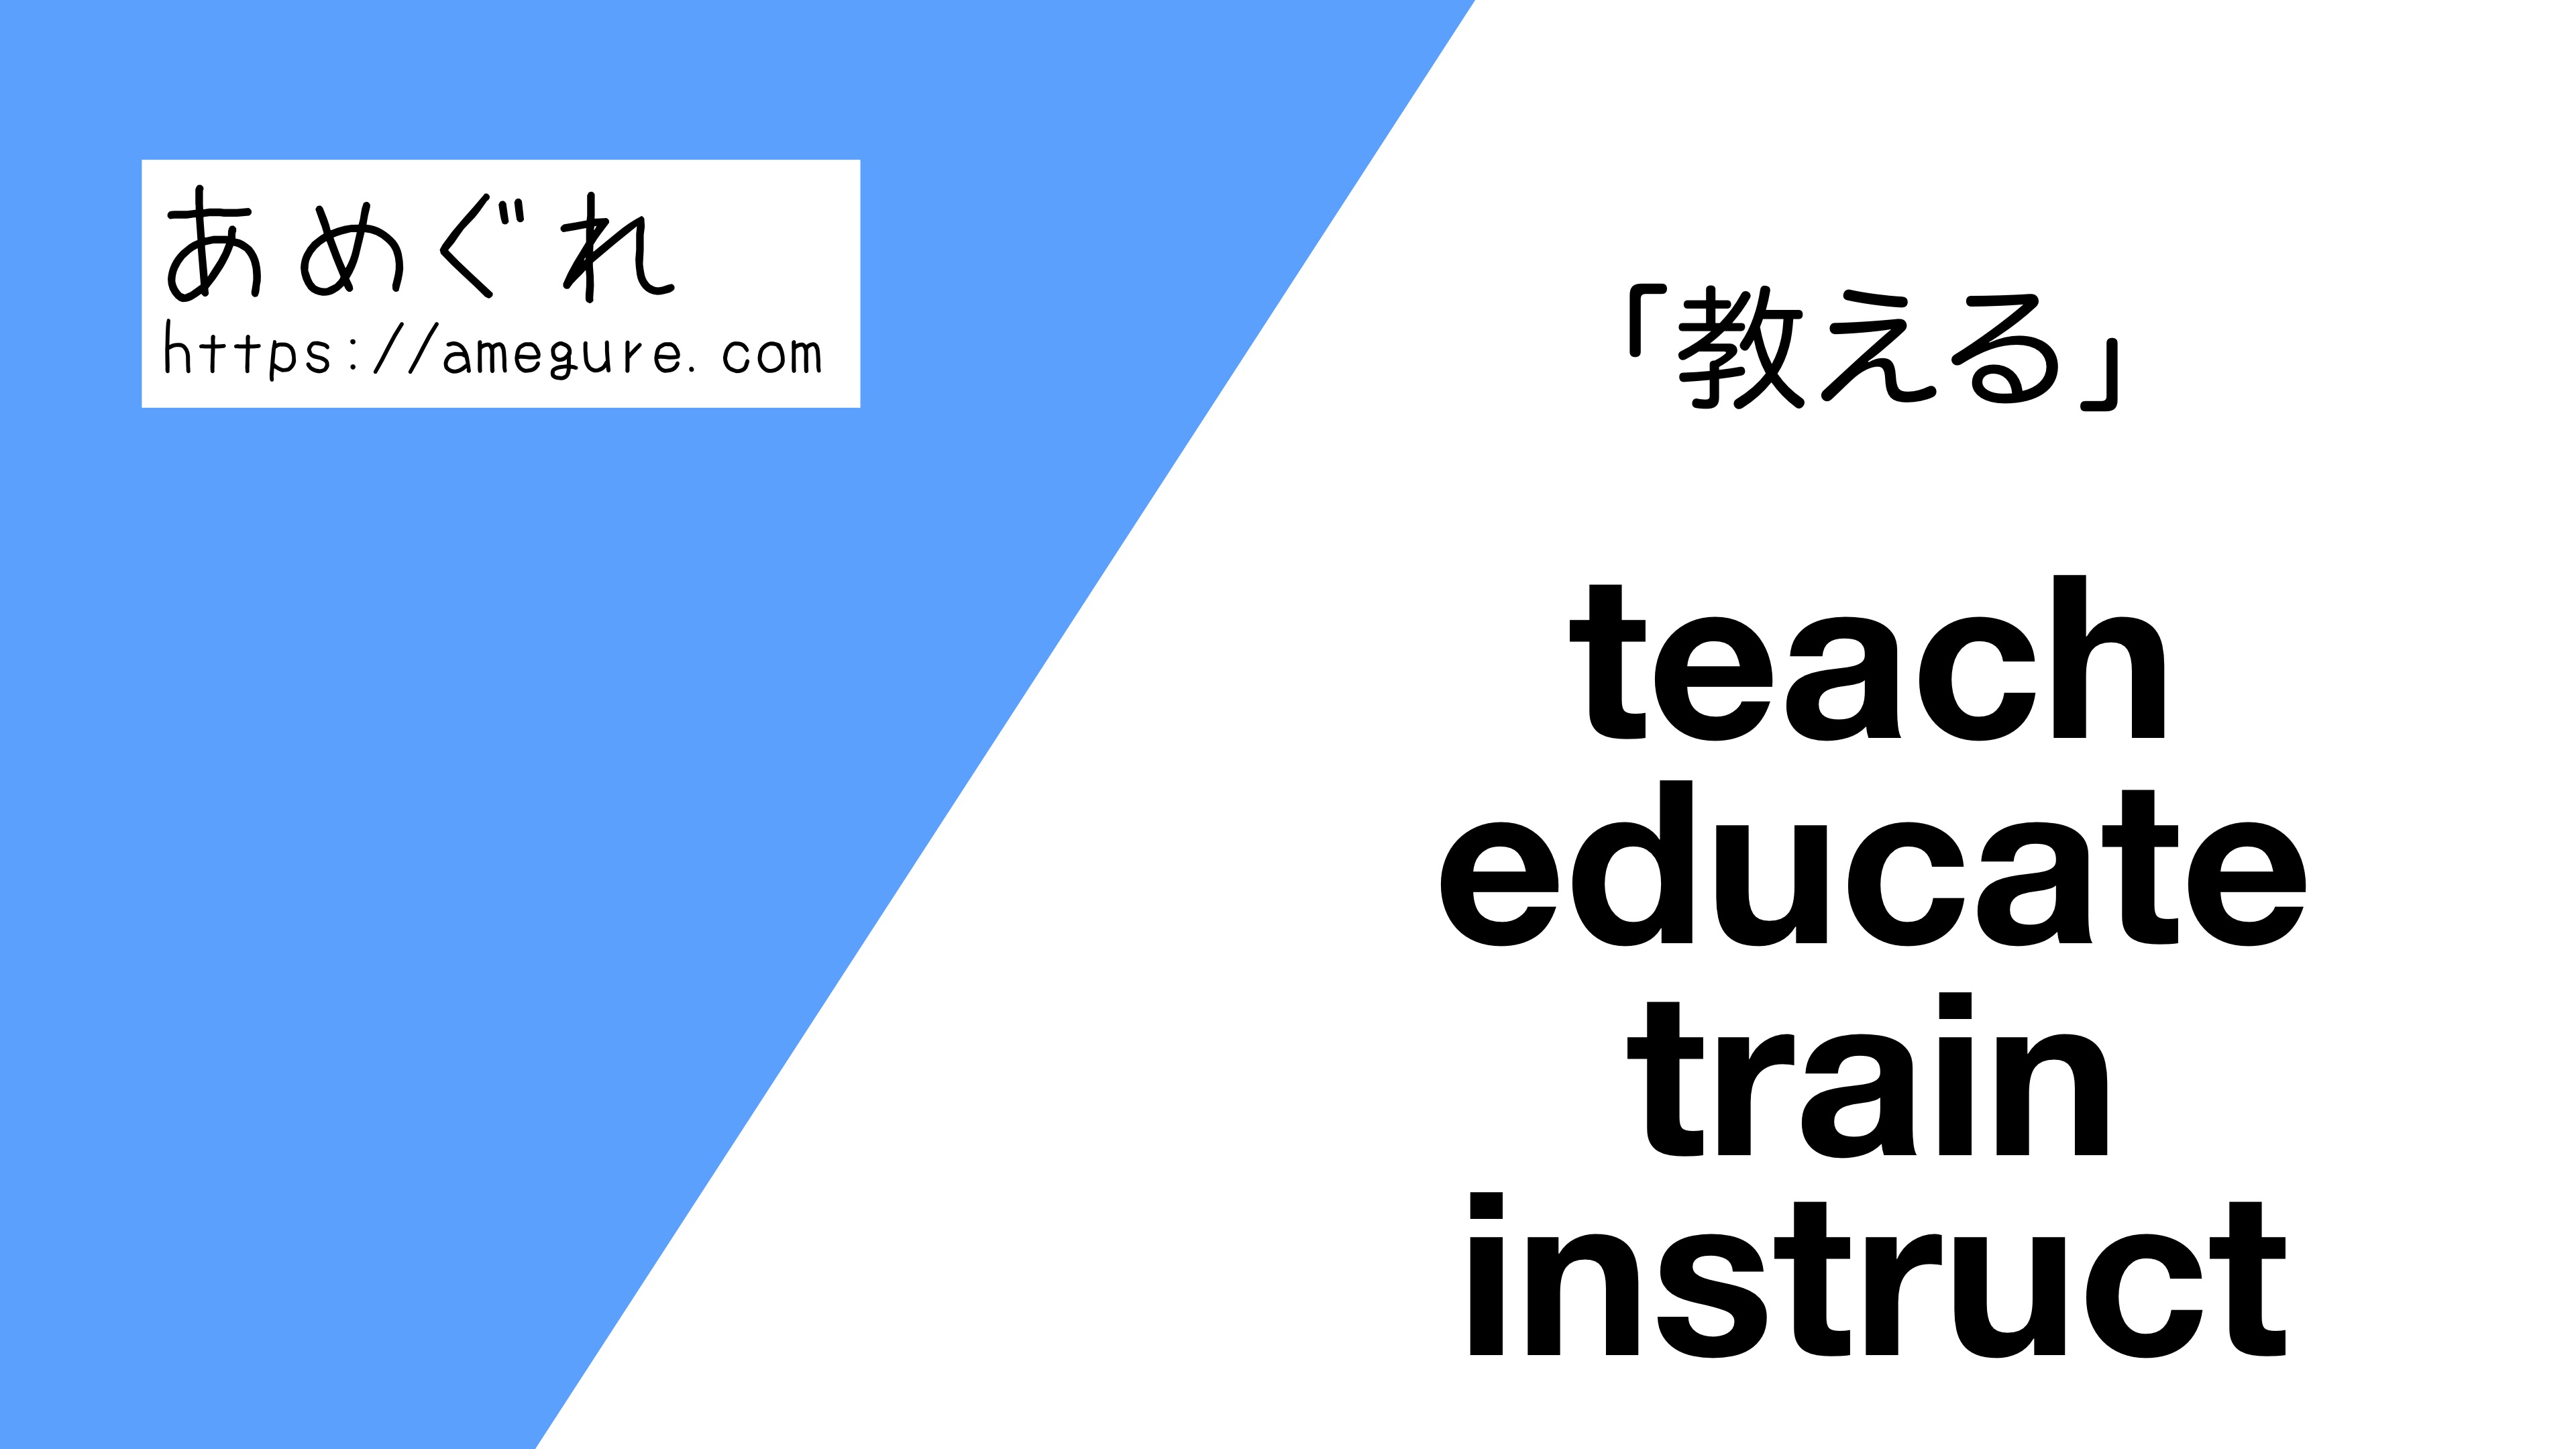 英語 Teach Educate Train Instruct 教える の意味の違いと使い分け